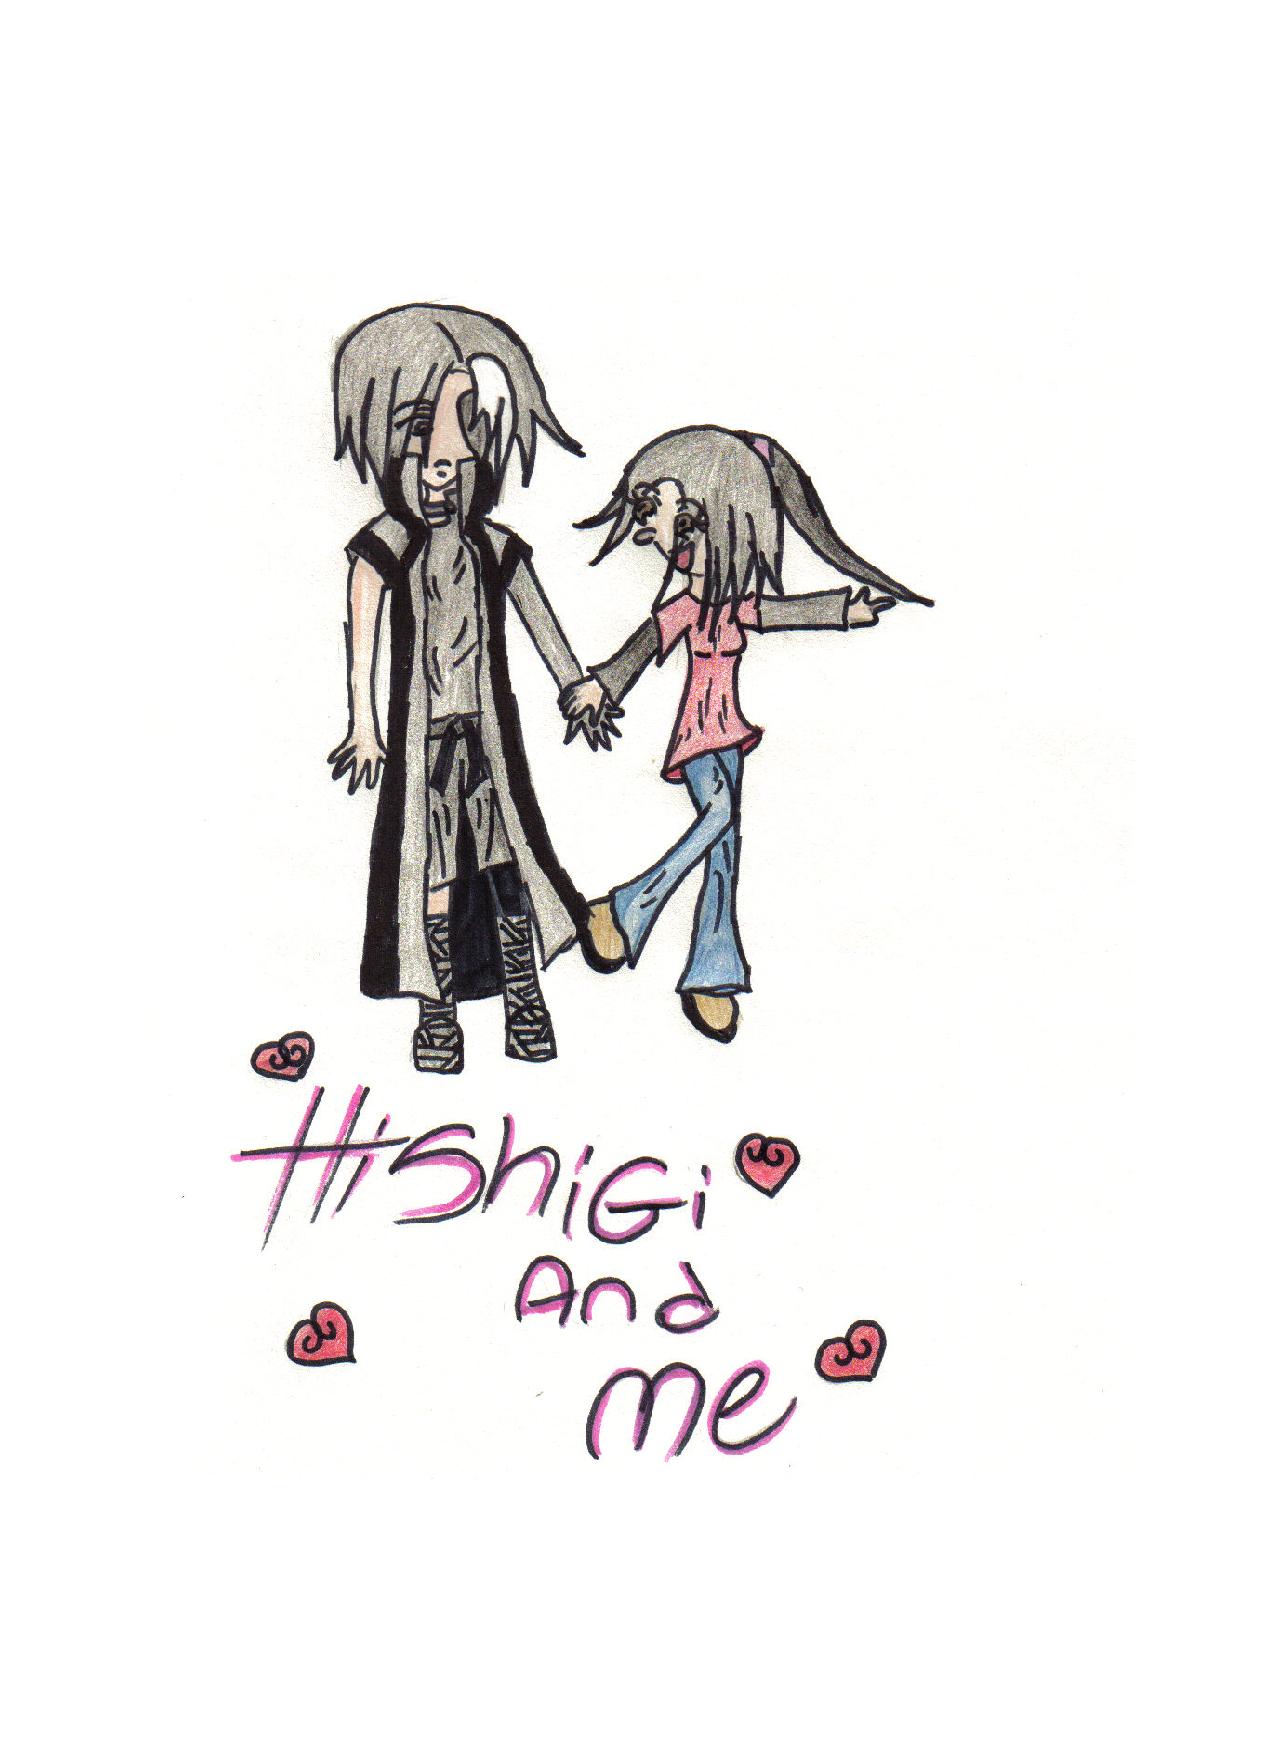 Hishigi and me by Talana